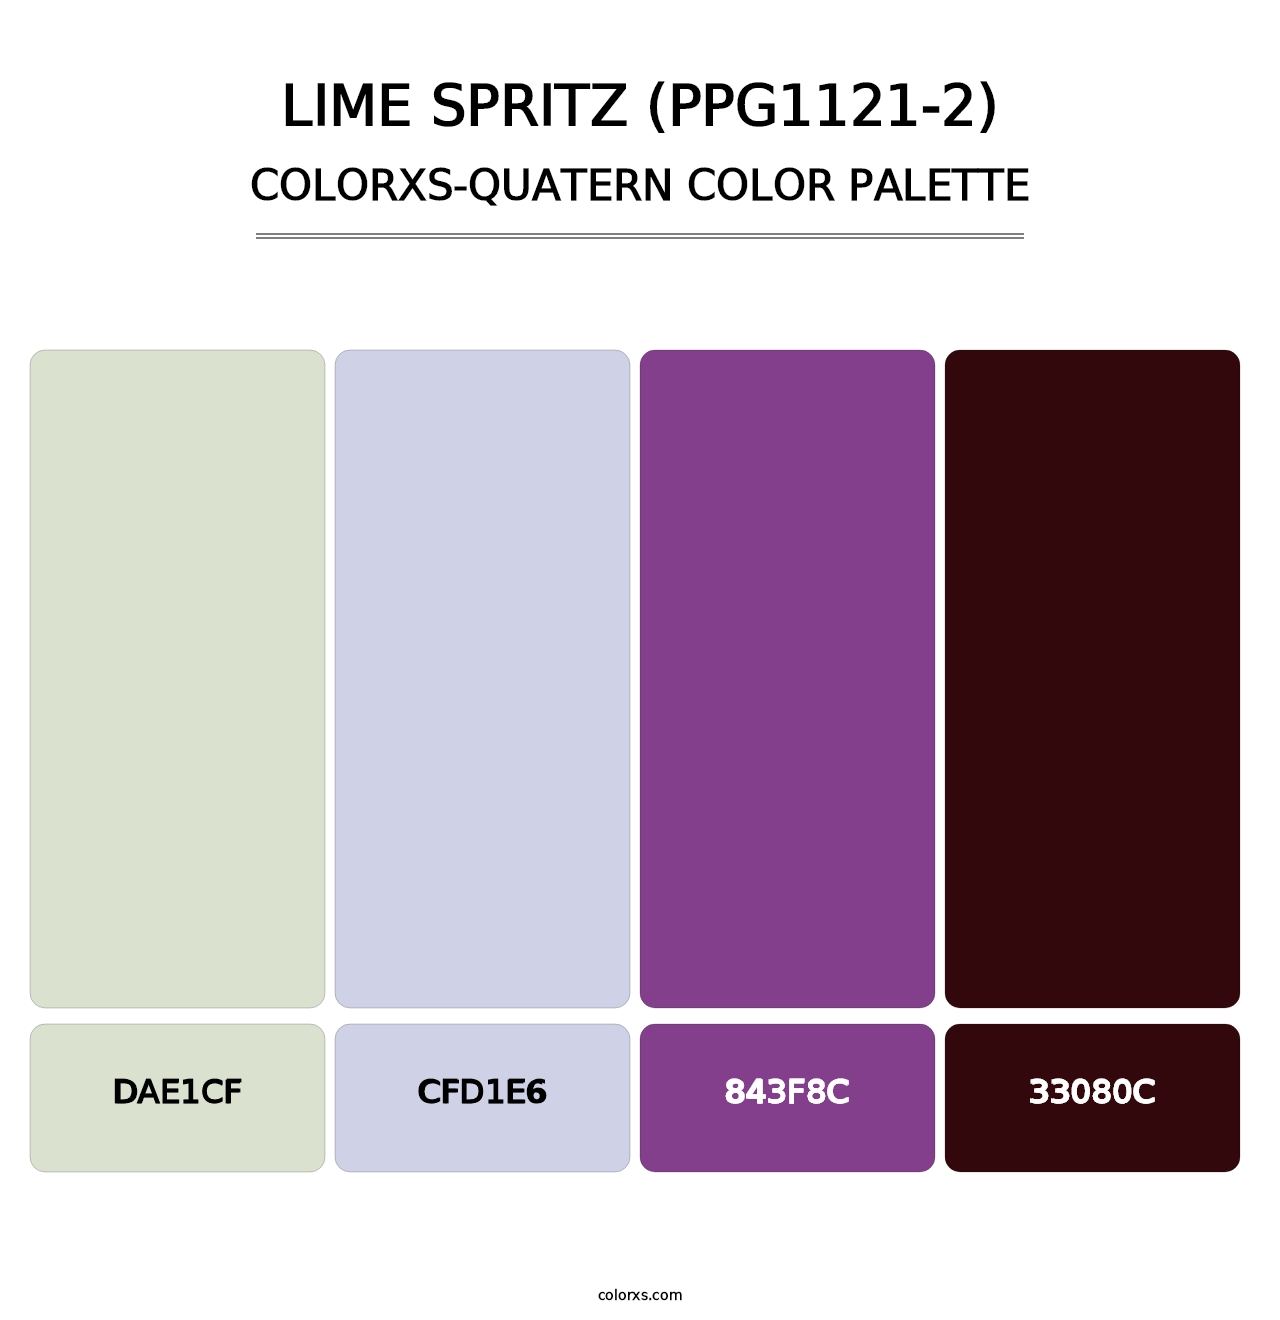 Lime Spritz (PPG1121-2) - Colorxs Quatern Palette